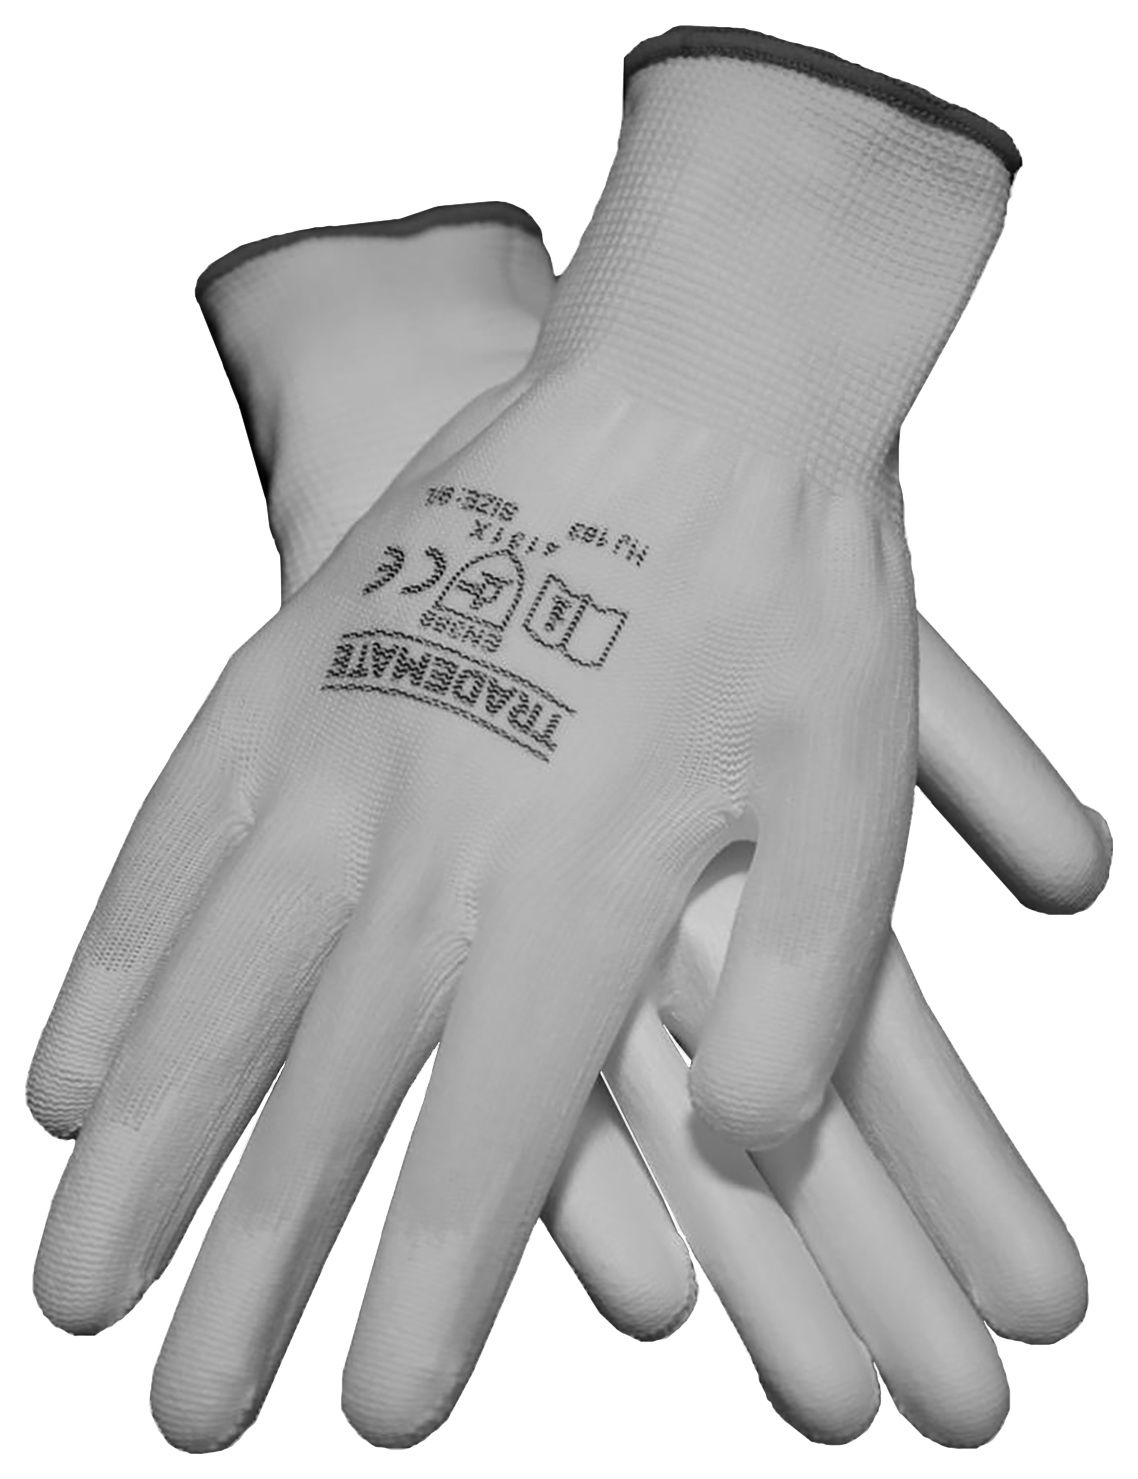 Image of TRADEMATE Decorators Glove White -Size 10 (XL)